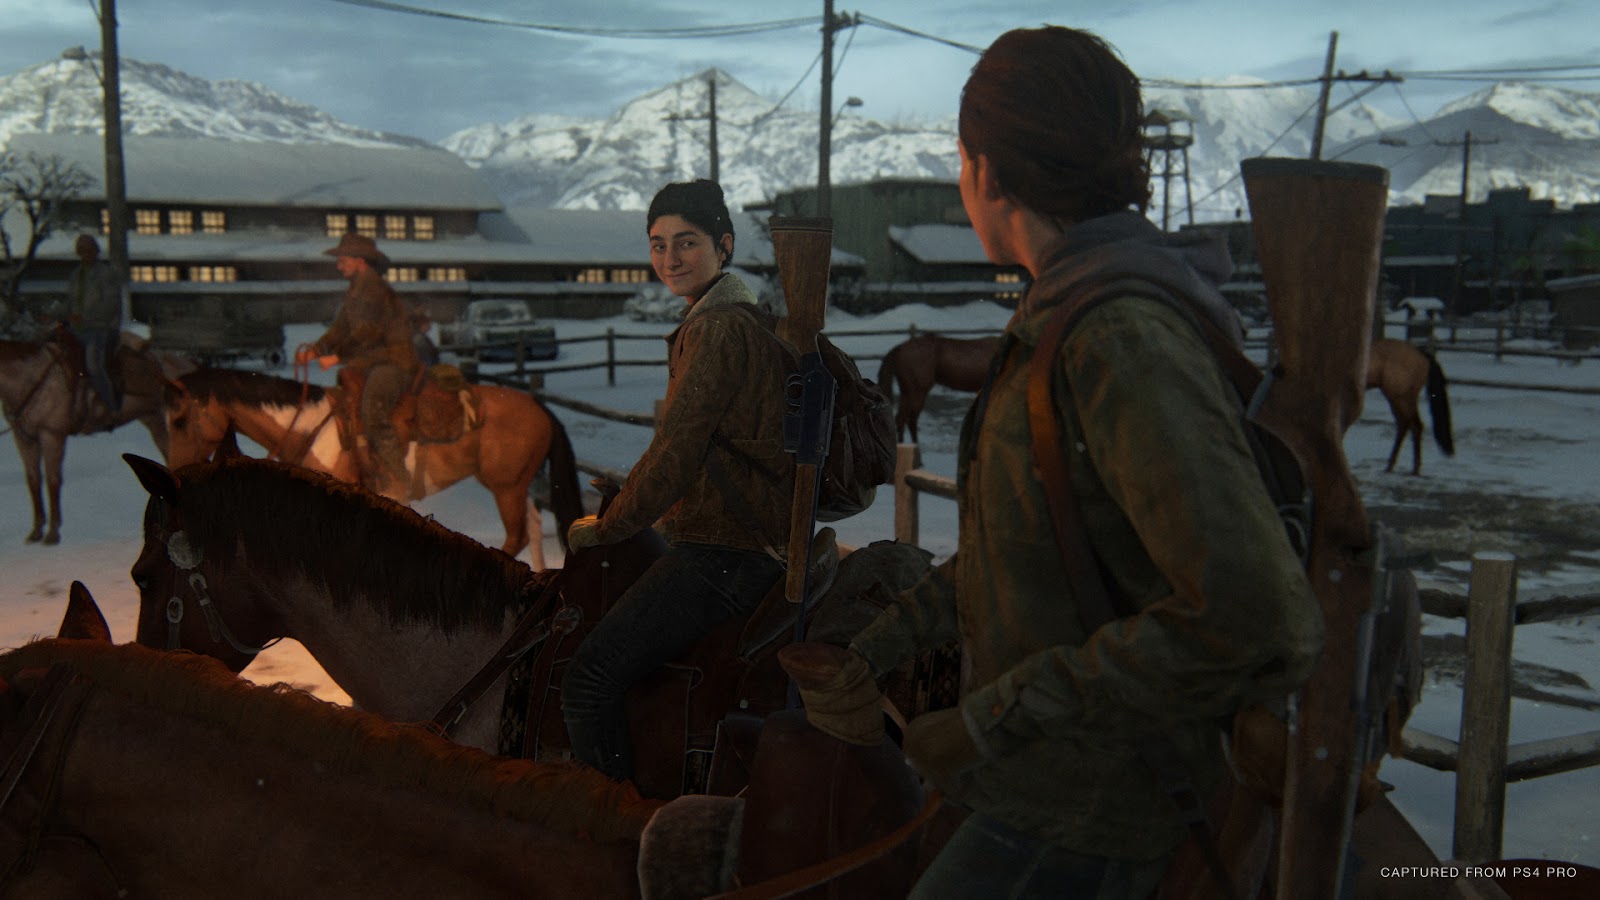 Análise: The Last of Us Part II (PS4) é uma história brutal sobre ódio e vingança